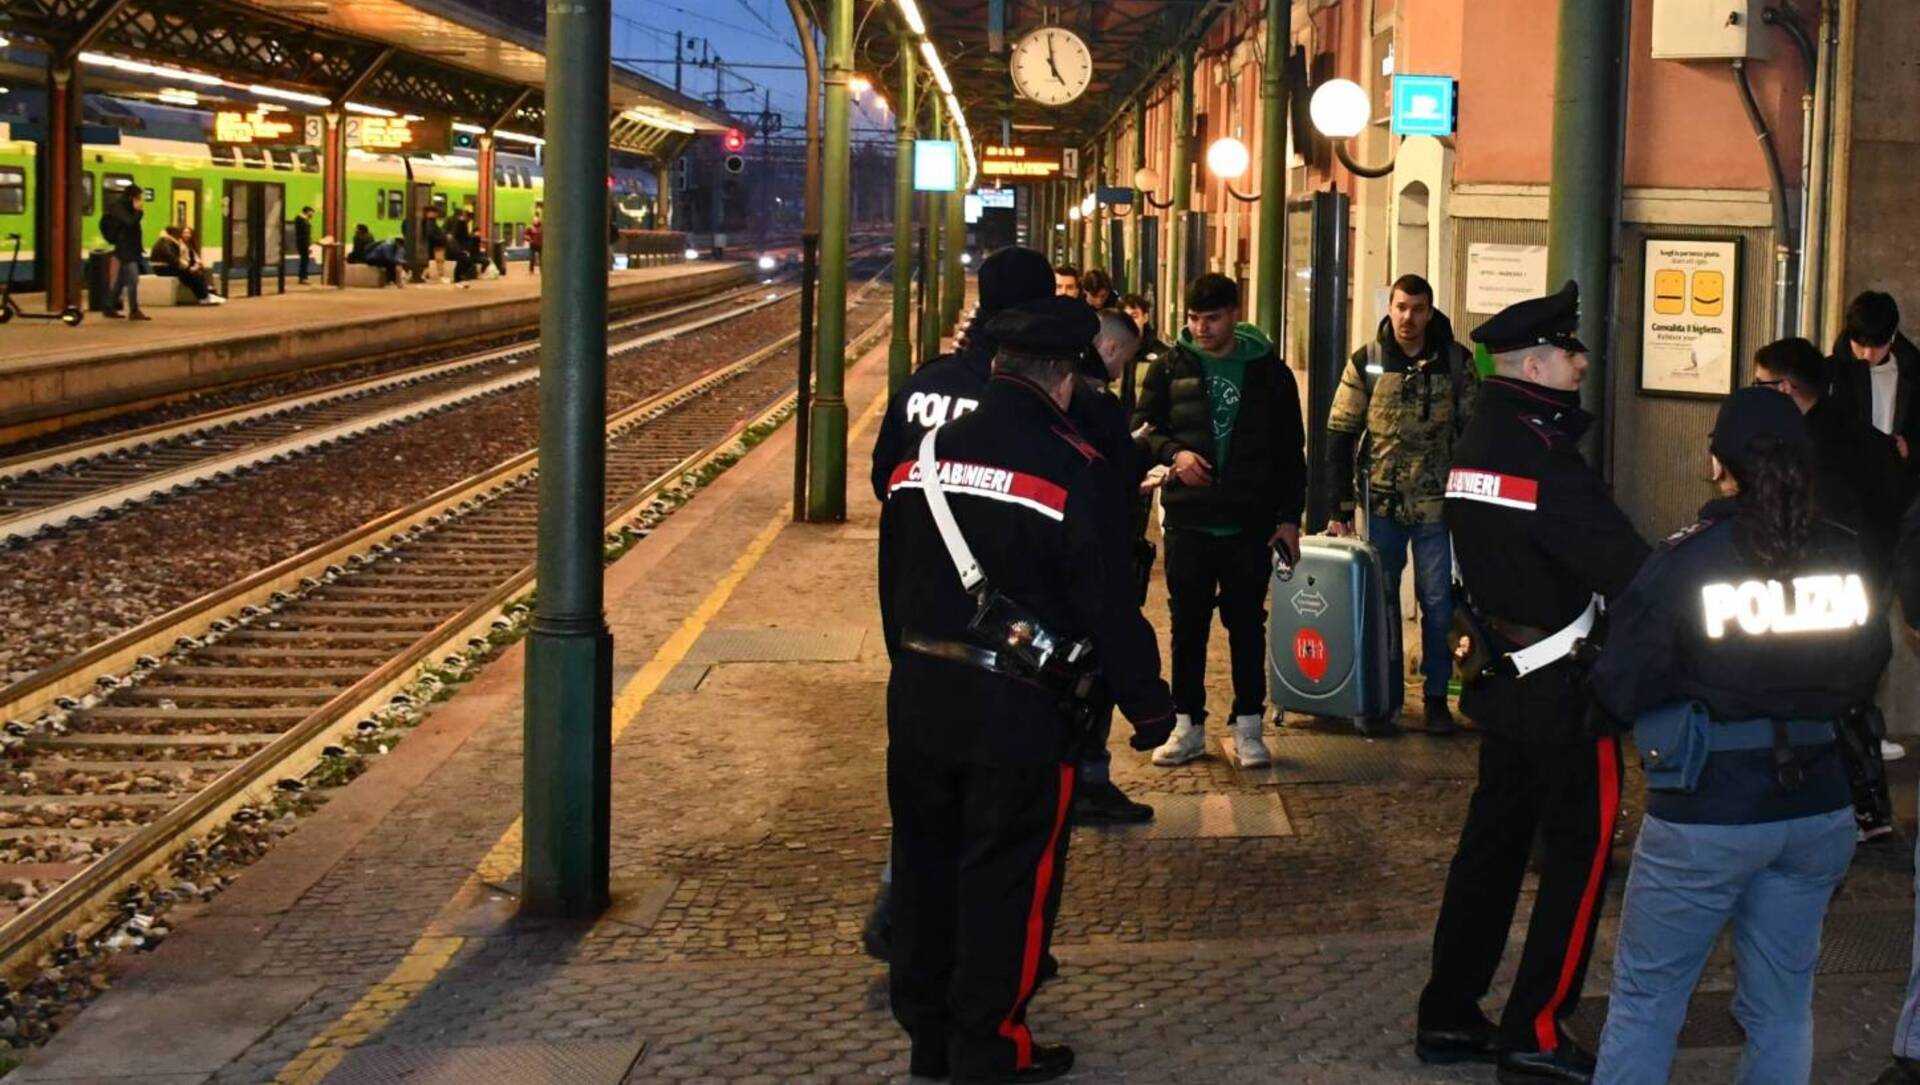 Ieri a Saronno: rapina in stazione, furto sventato a Turate. Raccolta firme per la sicurezza